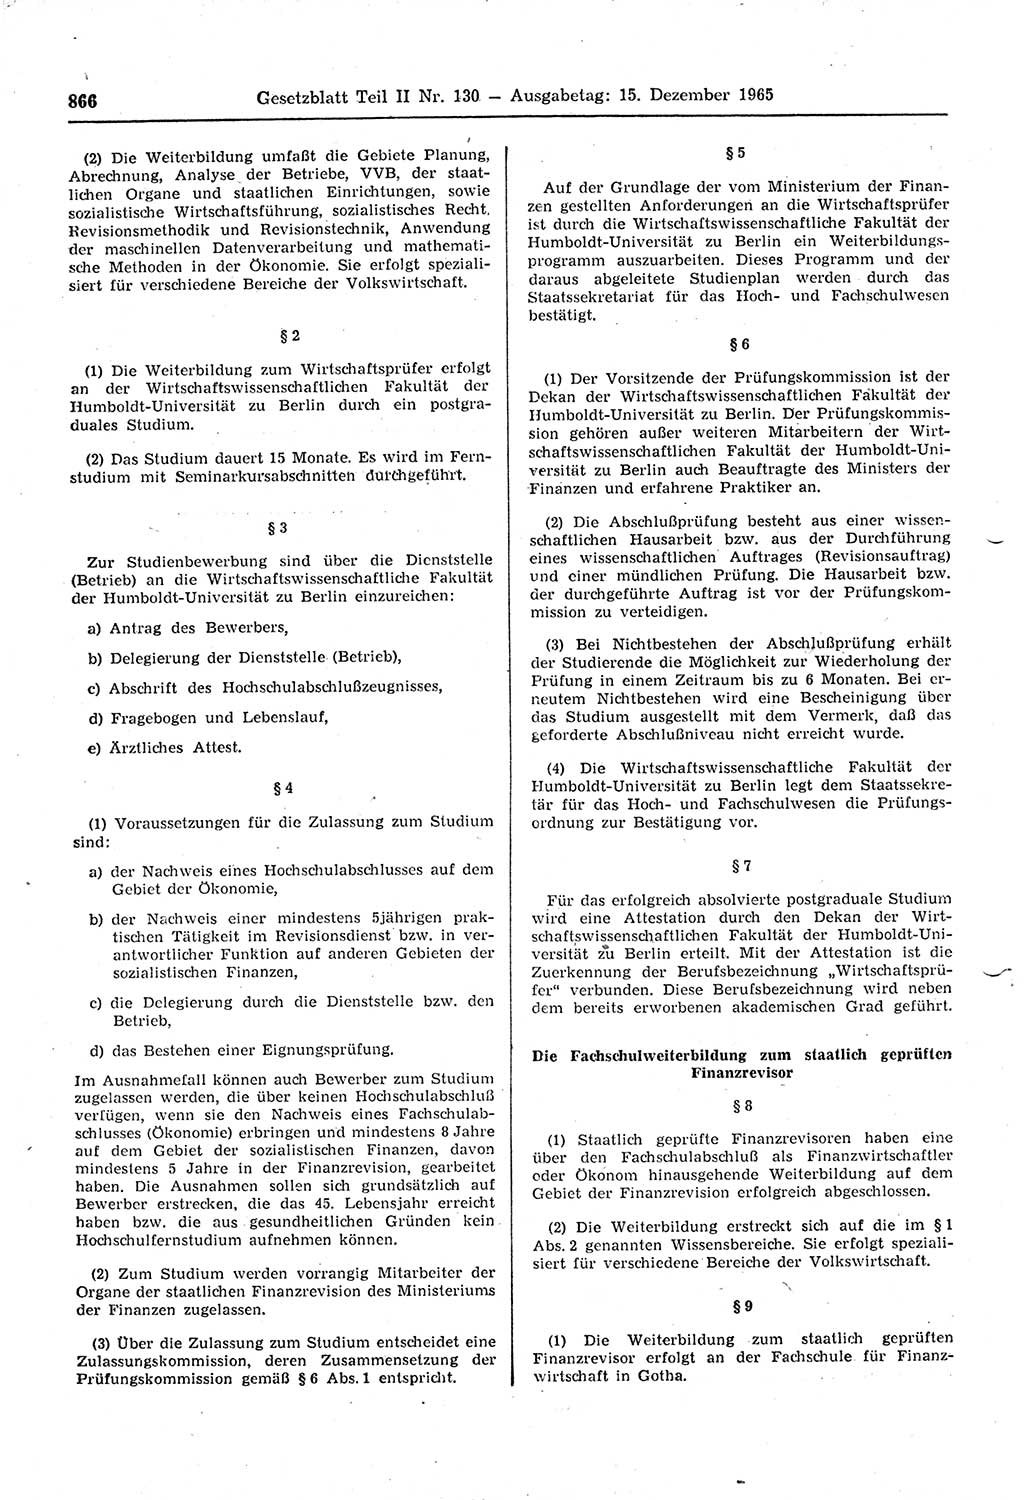 Gesetzblatt (GBl.) der Deutschen Demokratischen Republik (DDR) Teil ⅠⅠ 1965, Seite 866 (GBl. DDR ⅠⅠ 1965, S. 866)